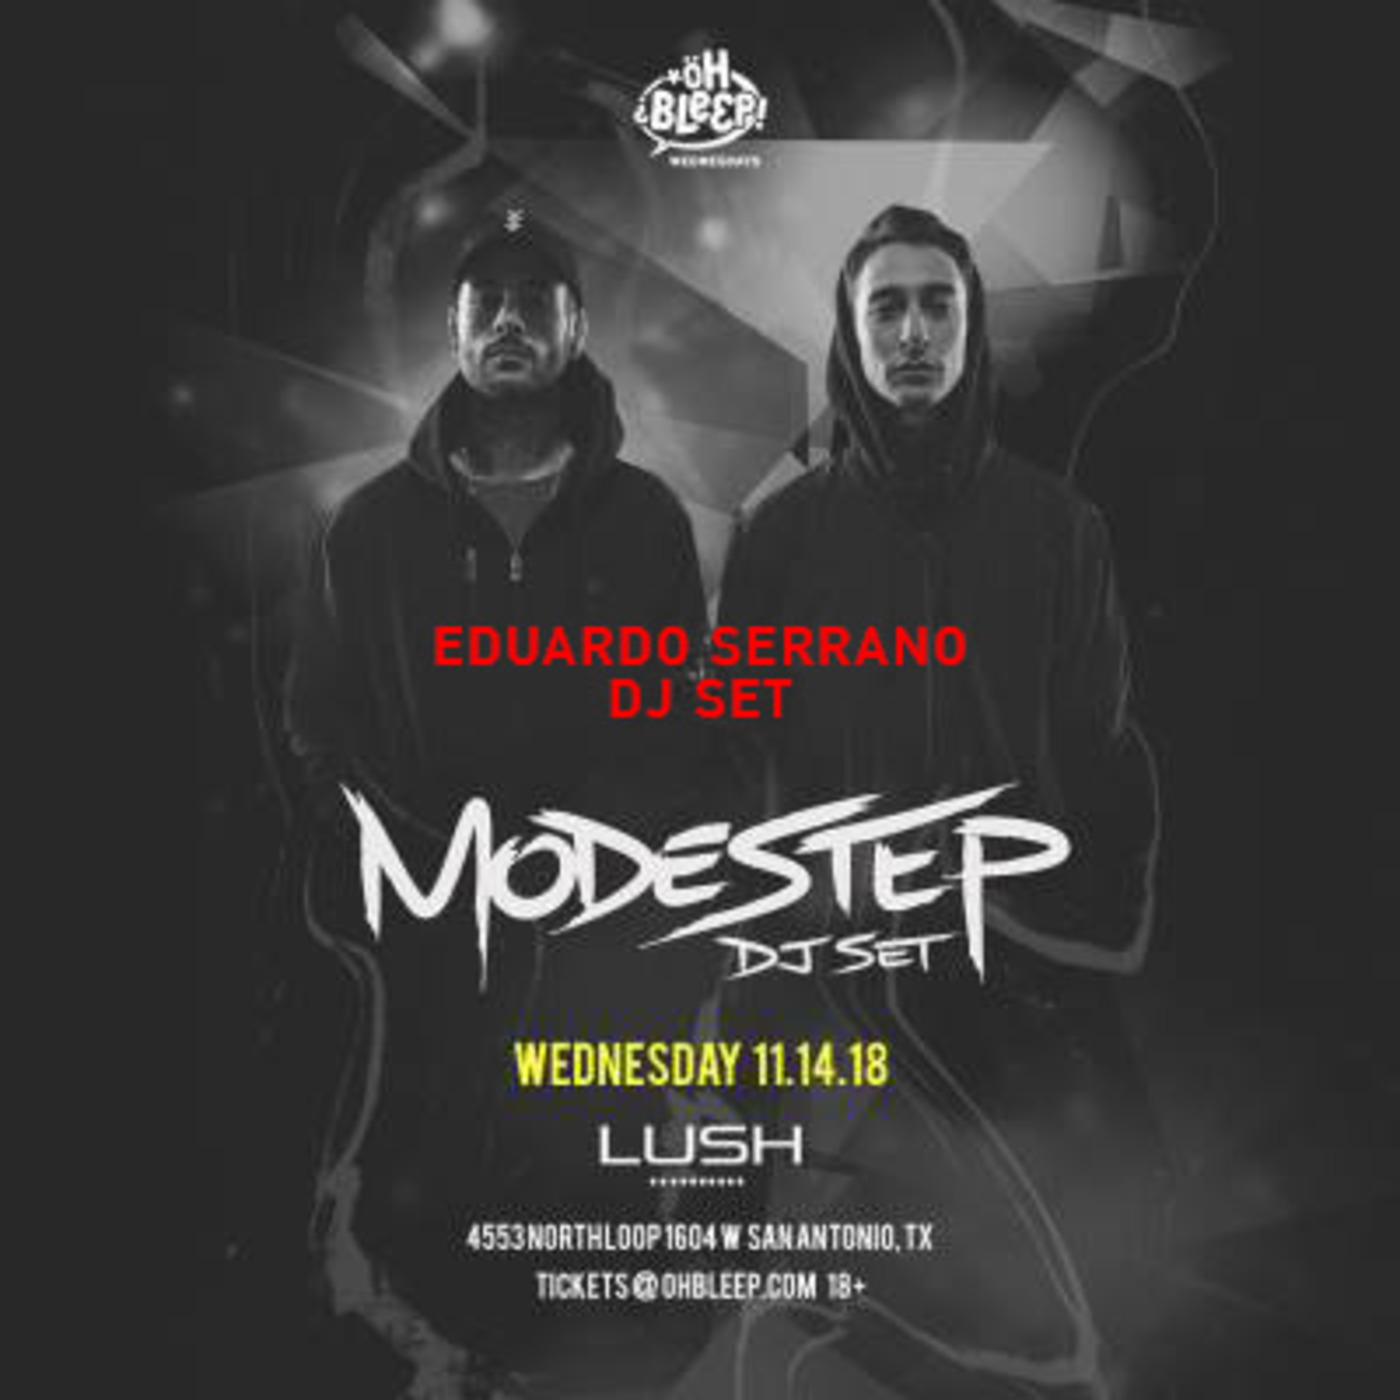 Modestep - Eduardo Serrano DJ Set